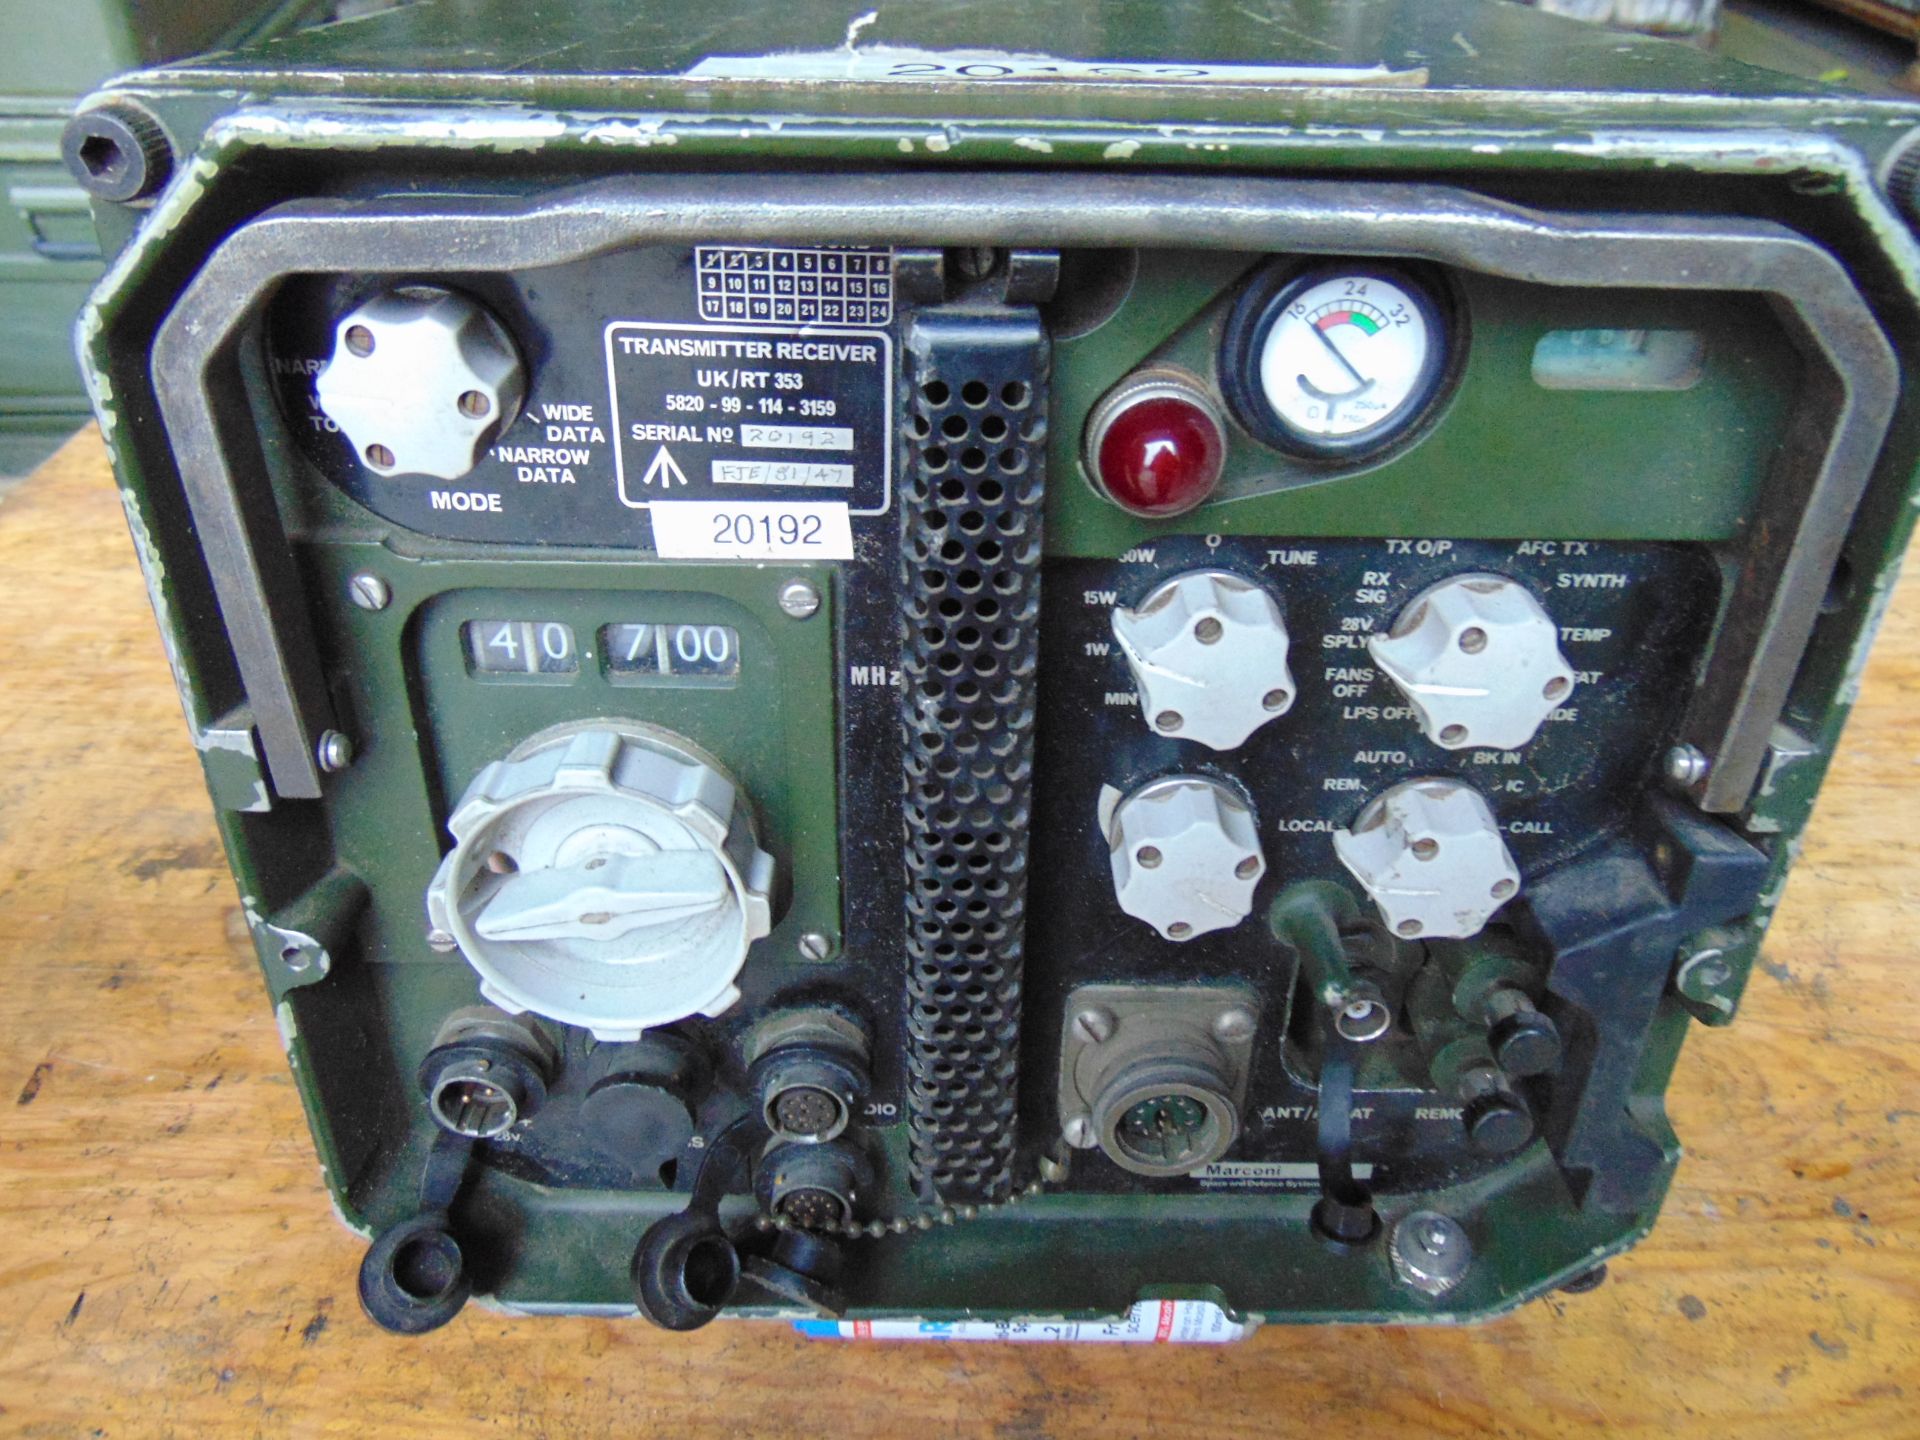 Clansman RT/UK 353 Vehicle Mounted Transmitter Receiver - Image 2 of 5